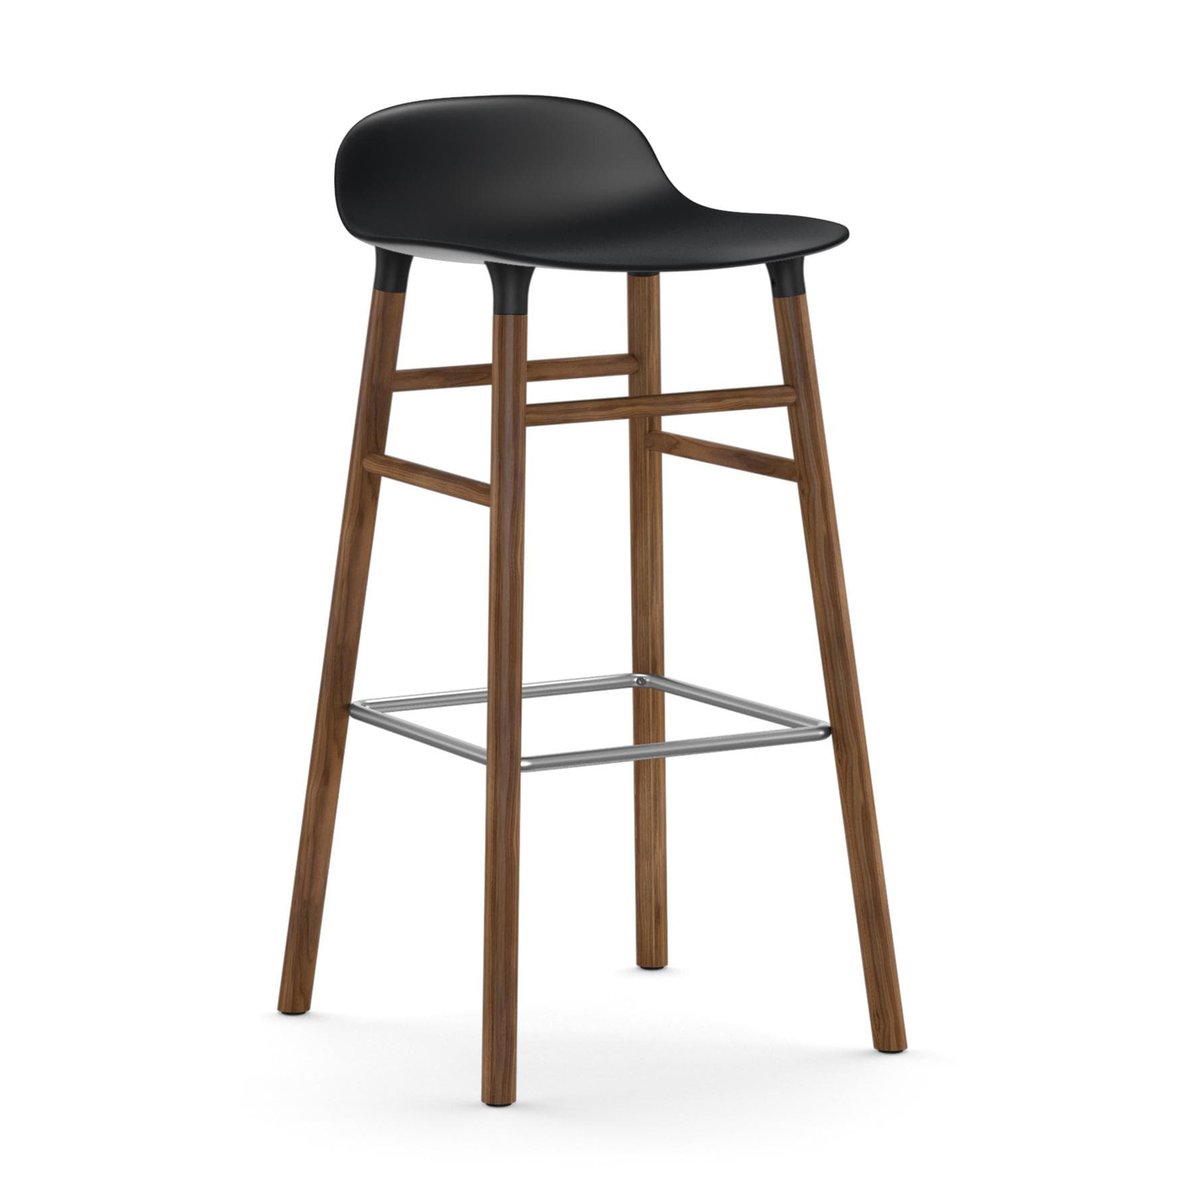 Bilde av Normann Copenhagen Form barstol valnøttbein 75 cm svart